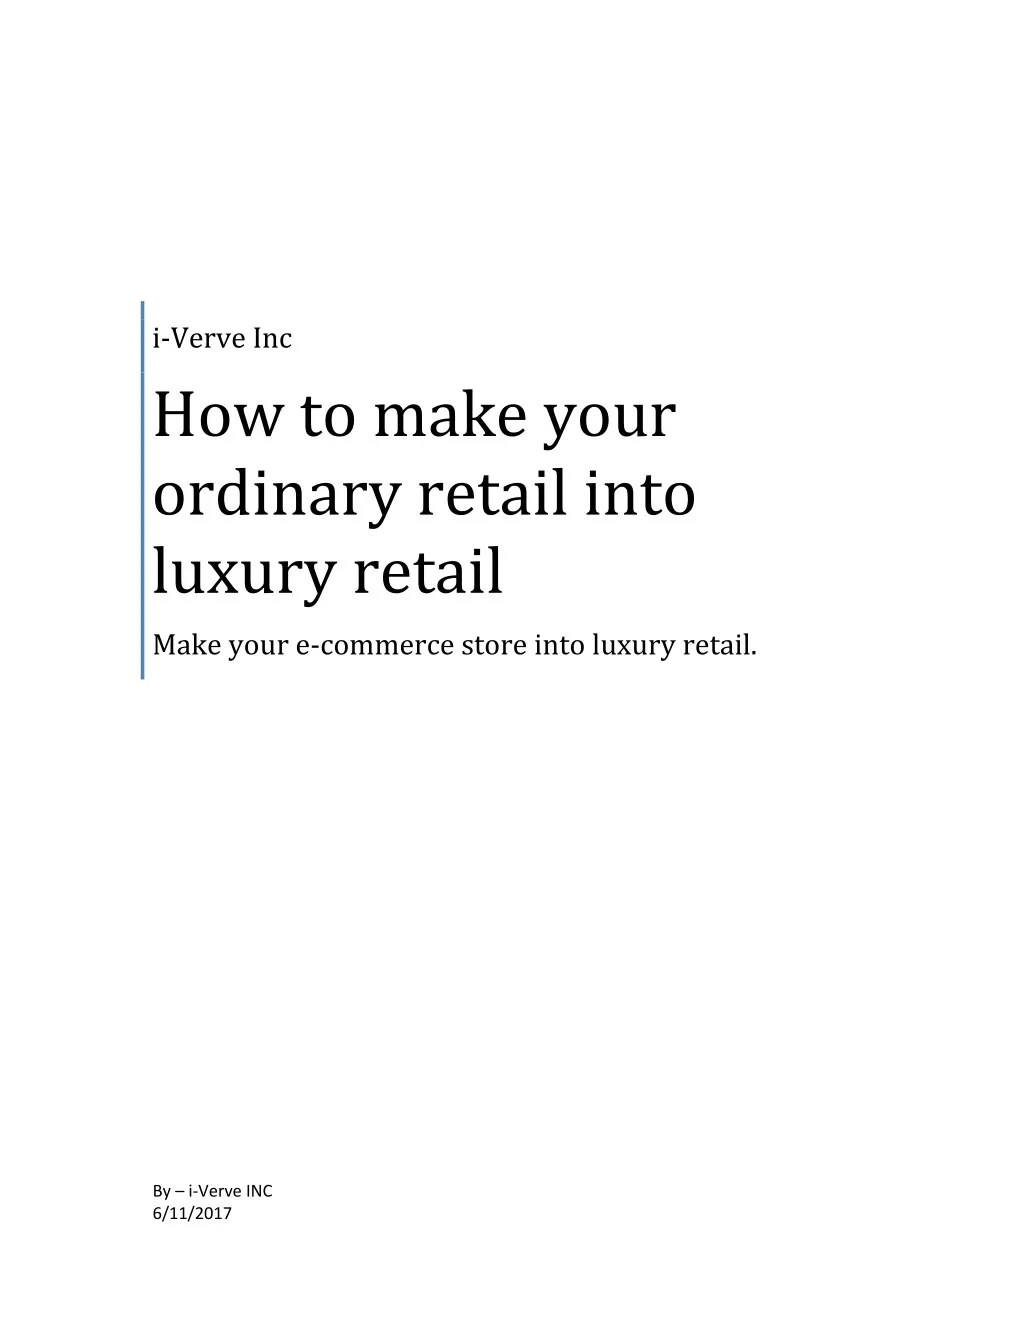 i verve inc how to make your ordinary retail into